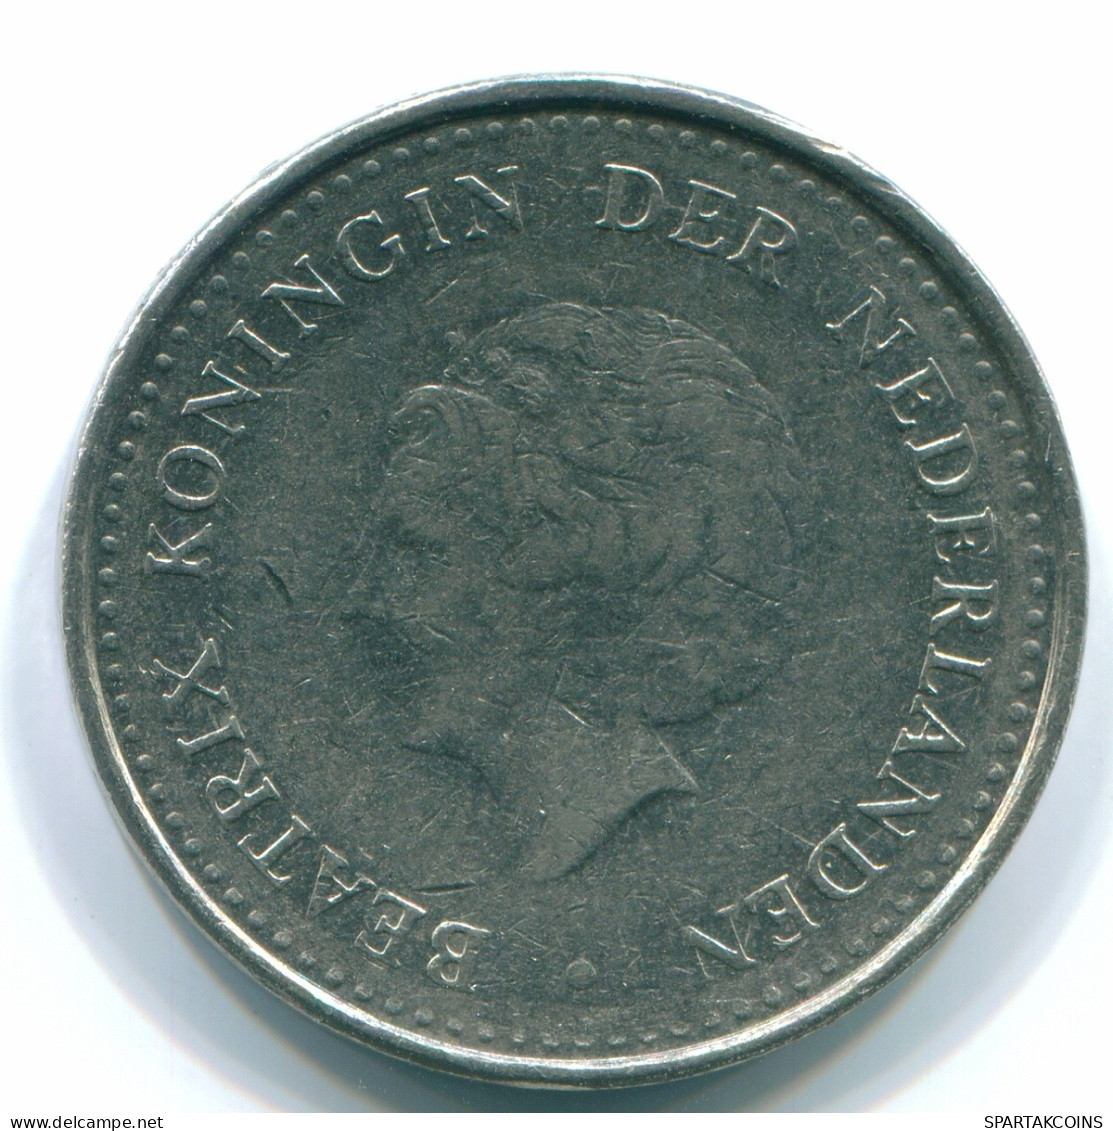 1 GULDEN 1982 NIEDERLÄNDISCHE ANTILLEN Nickel Koloniale Münze #S12049.D.A - Netherlands Antilles